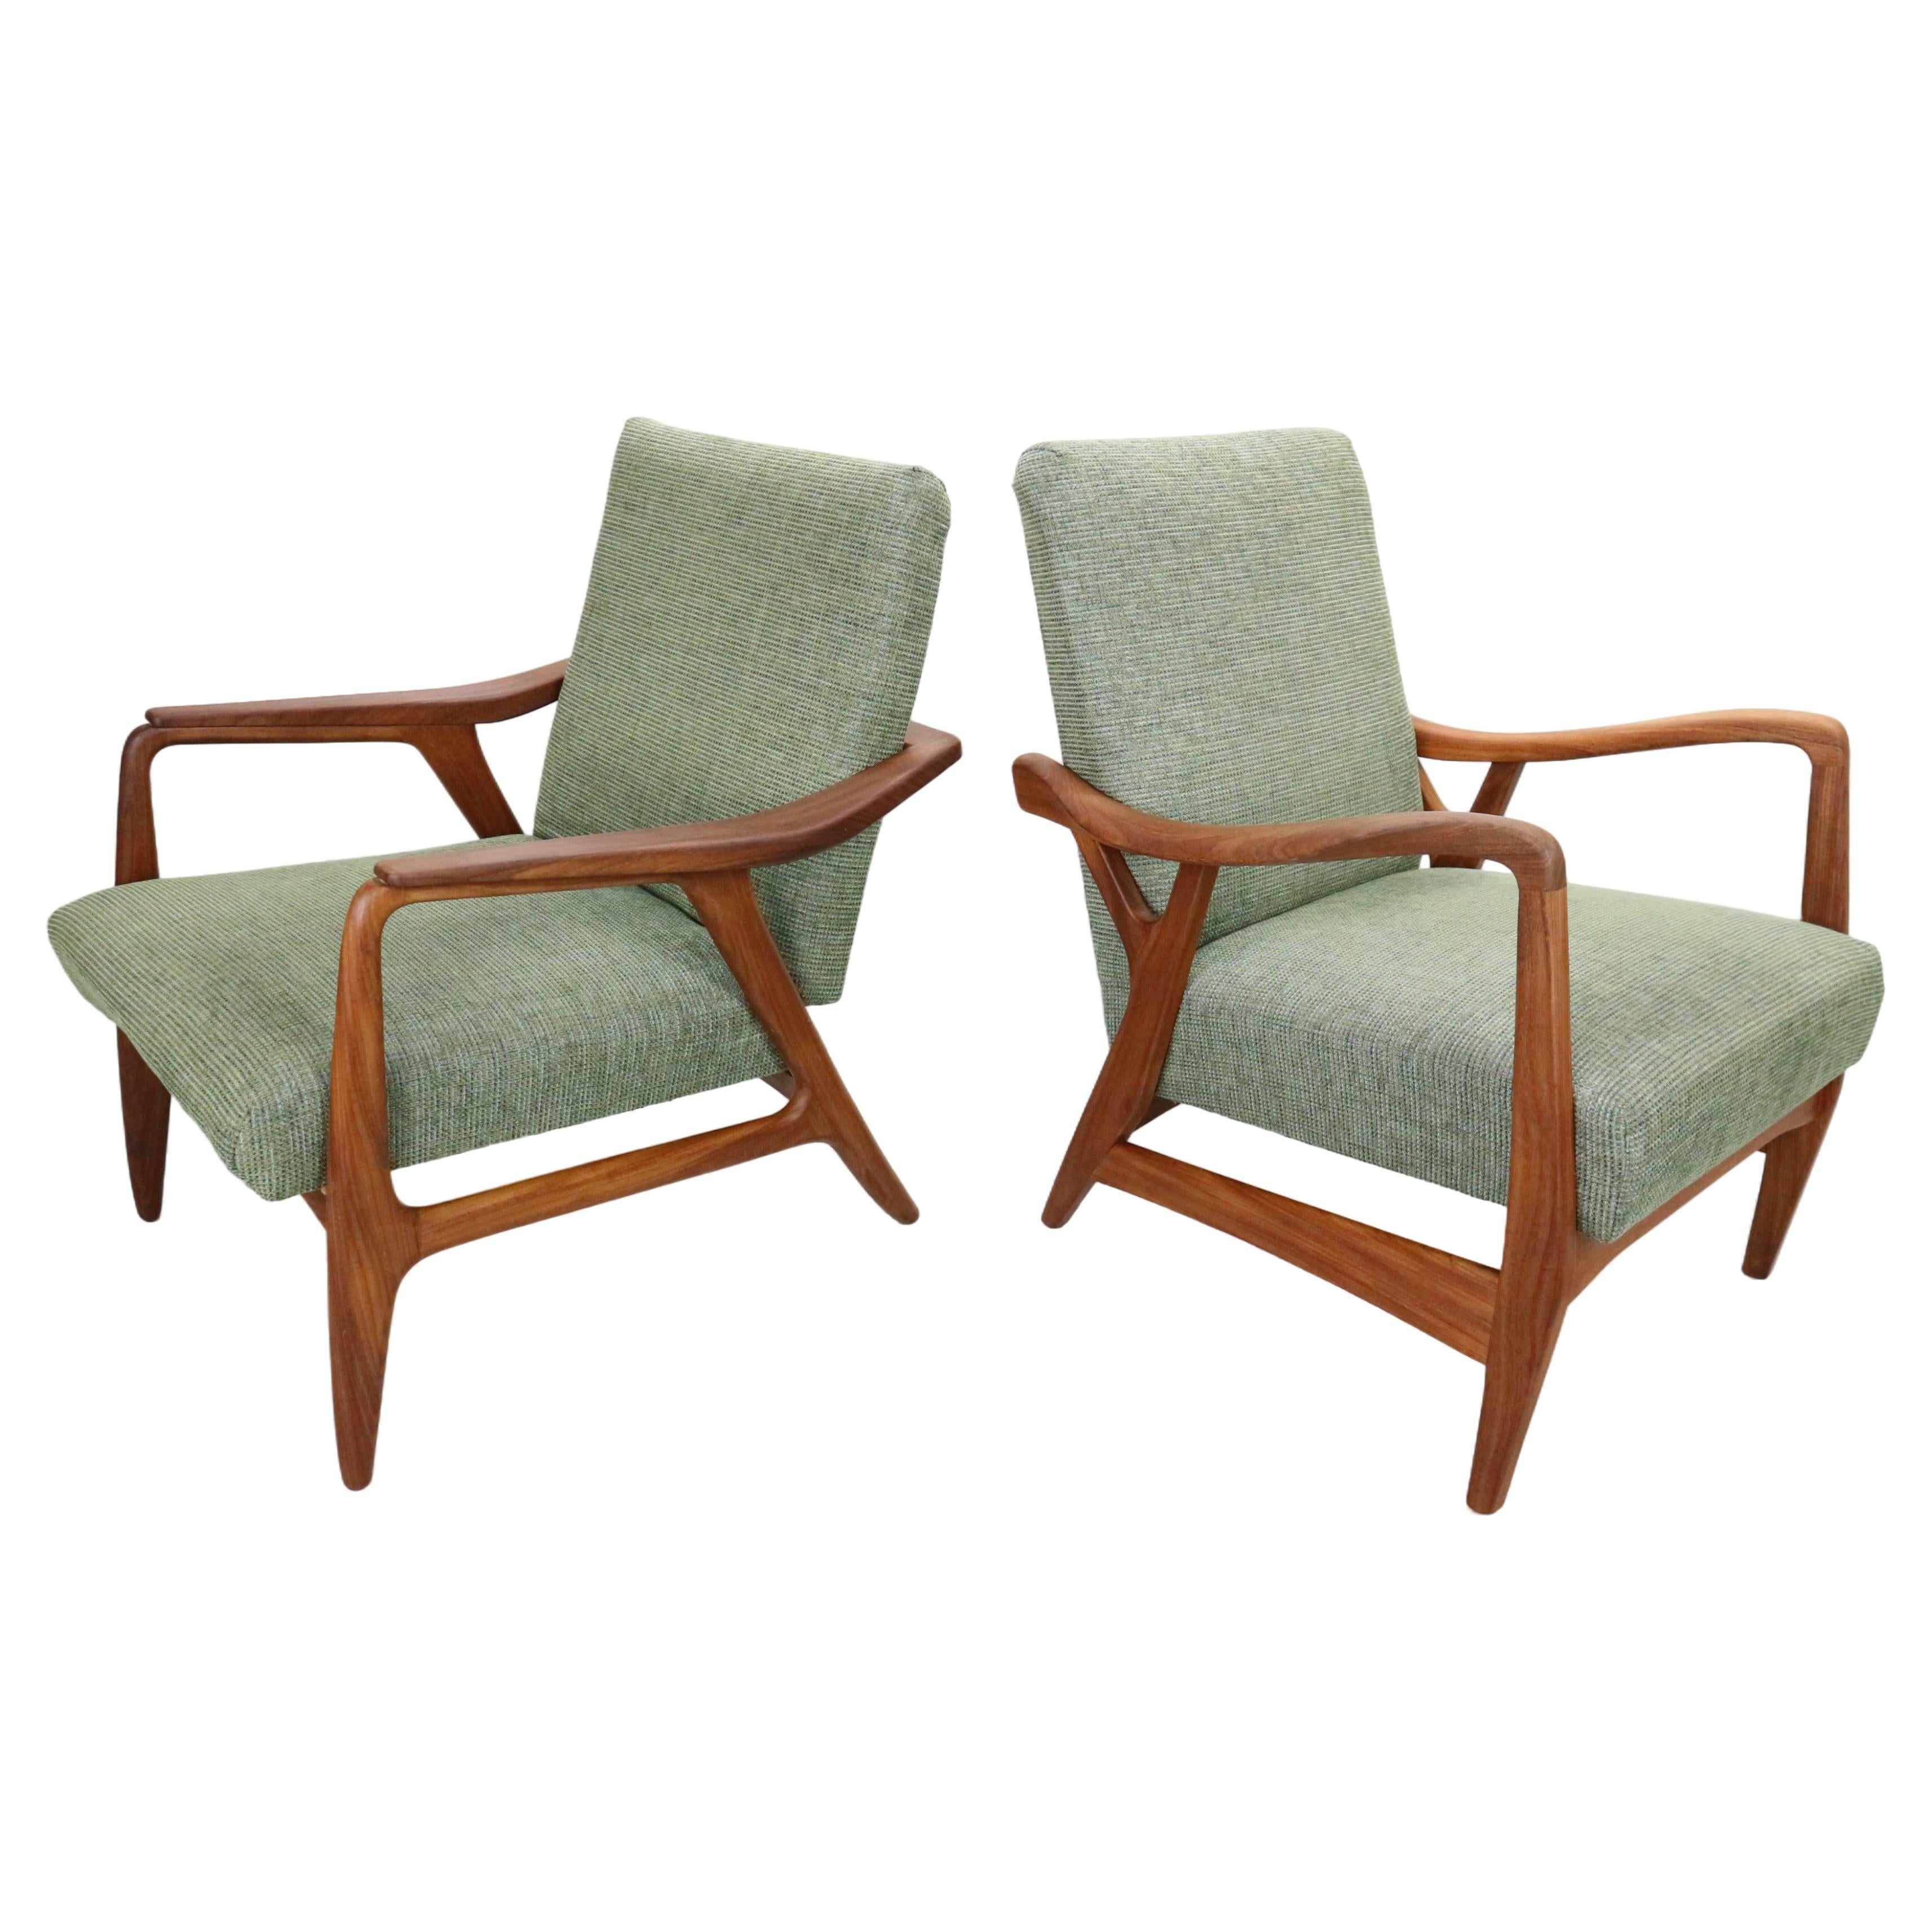 Ensemble de deux fauteuils danois vintage en teck de forme organique en tissu vert, années 1960